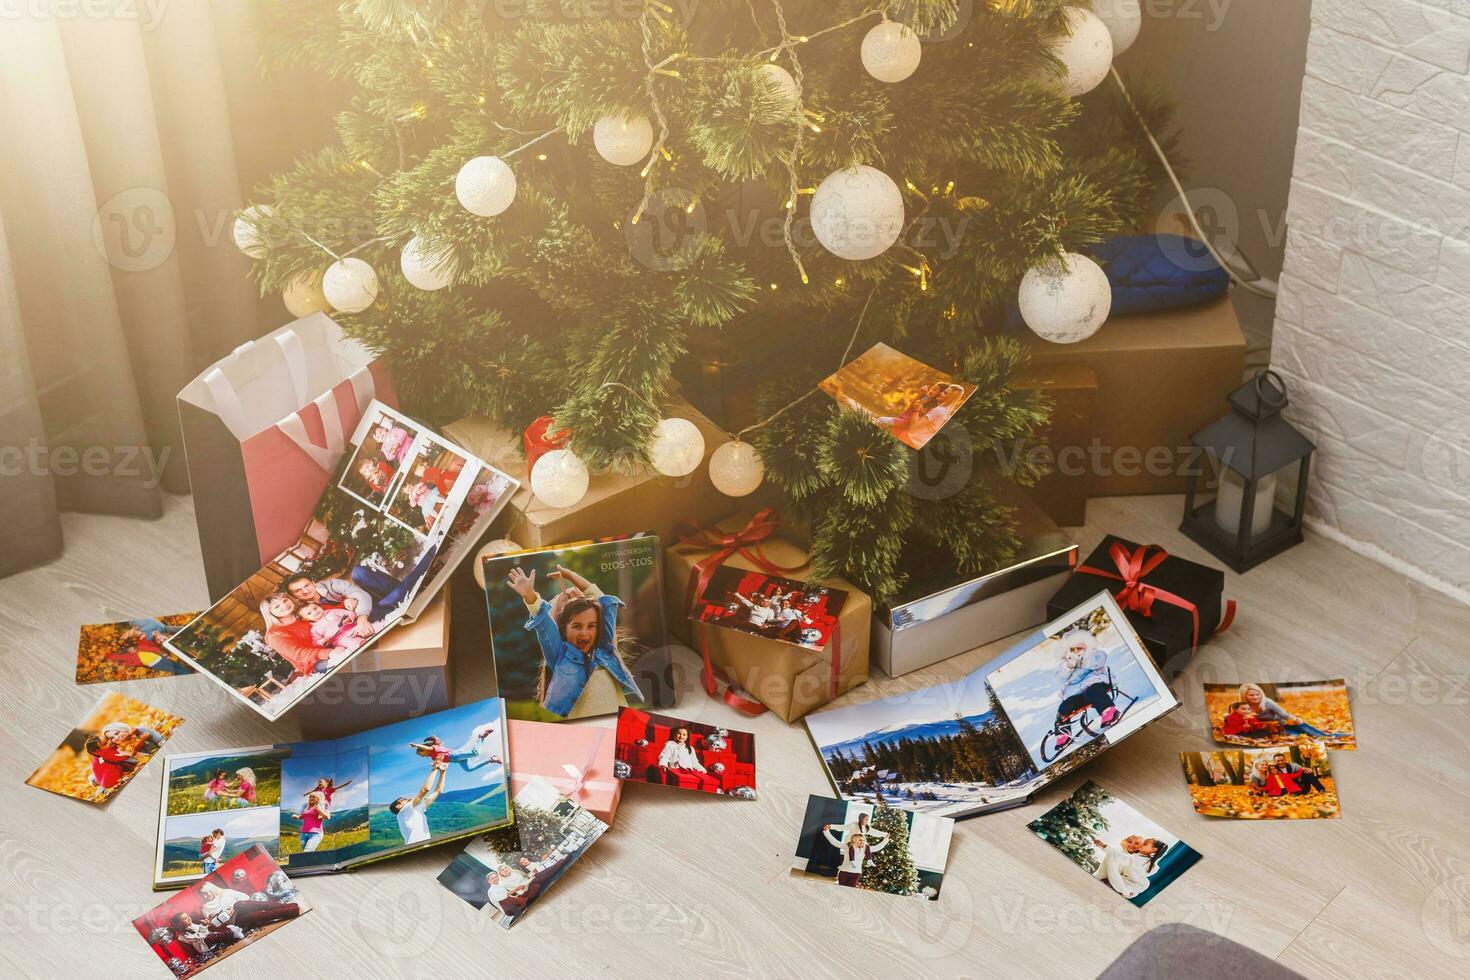 famille photo album près le Noël arbre